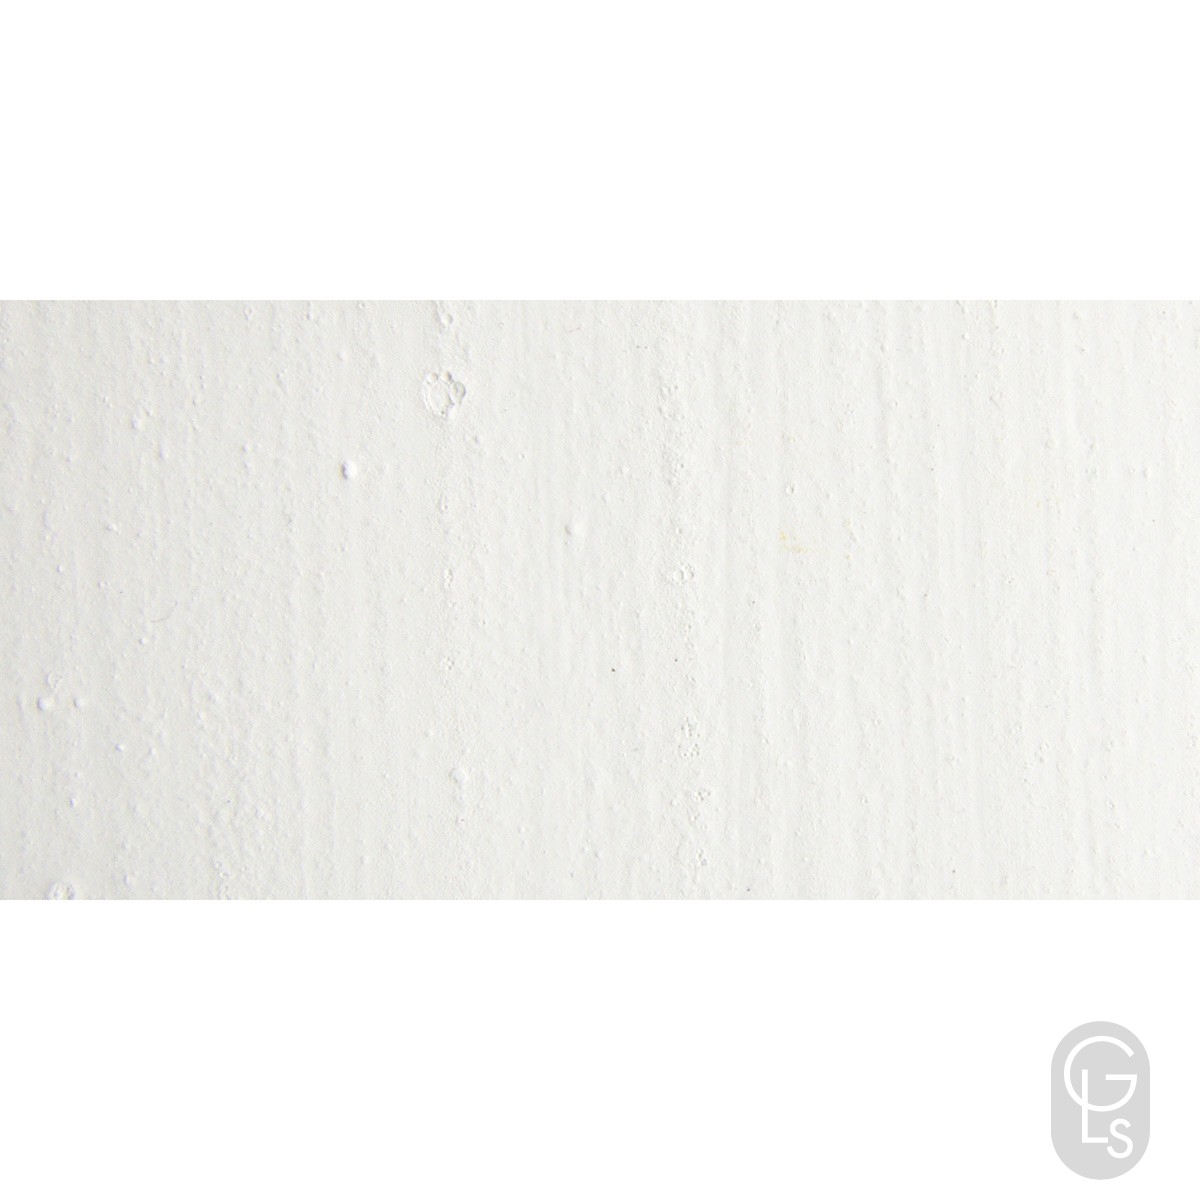 Dry Pigments - Zinc White - 1 kg